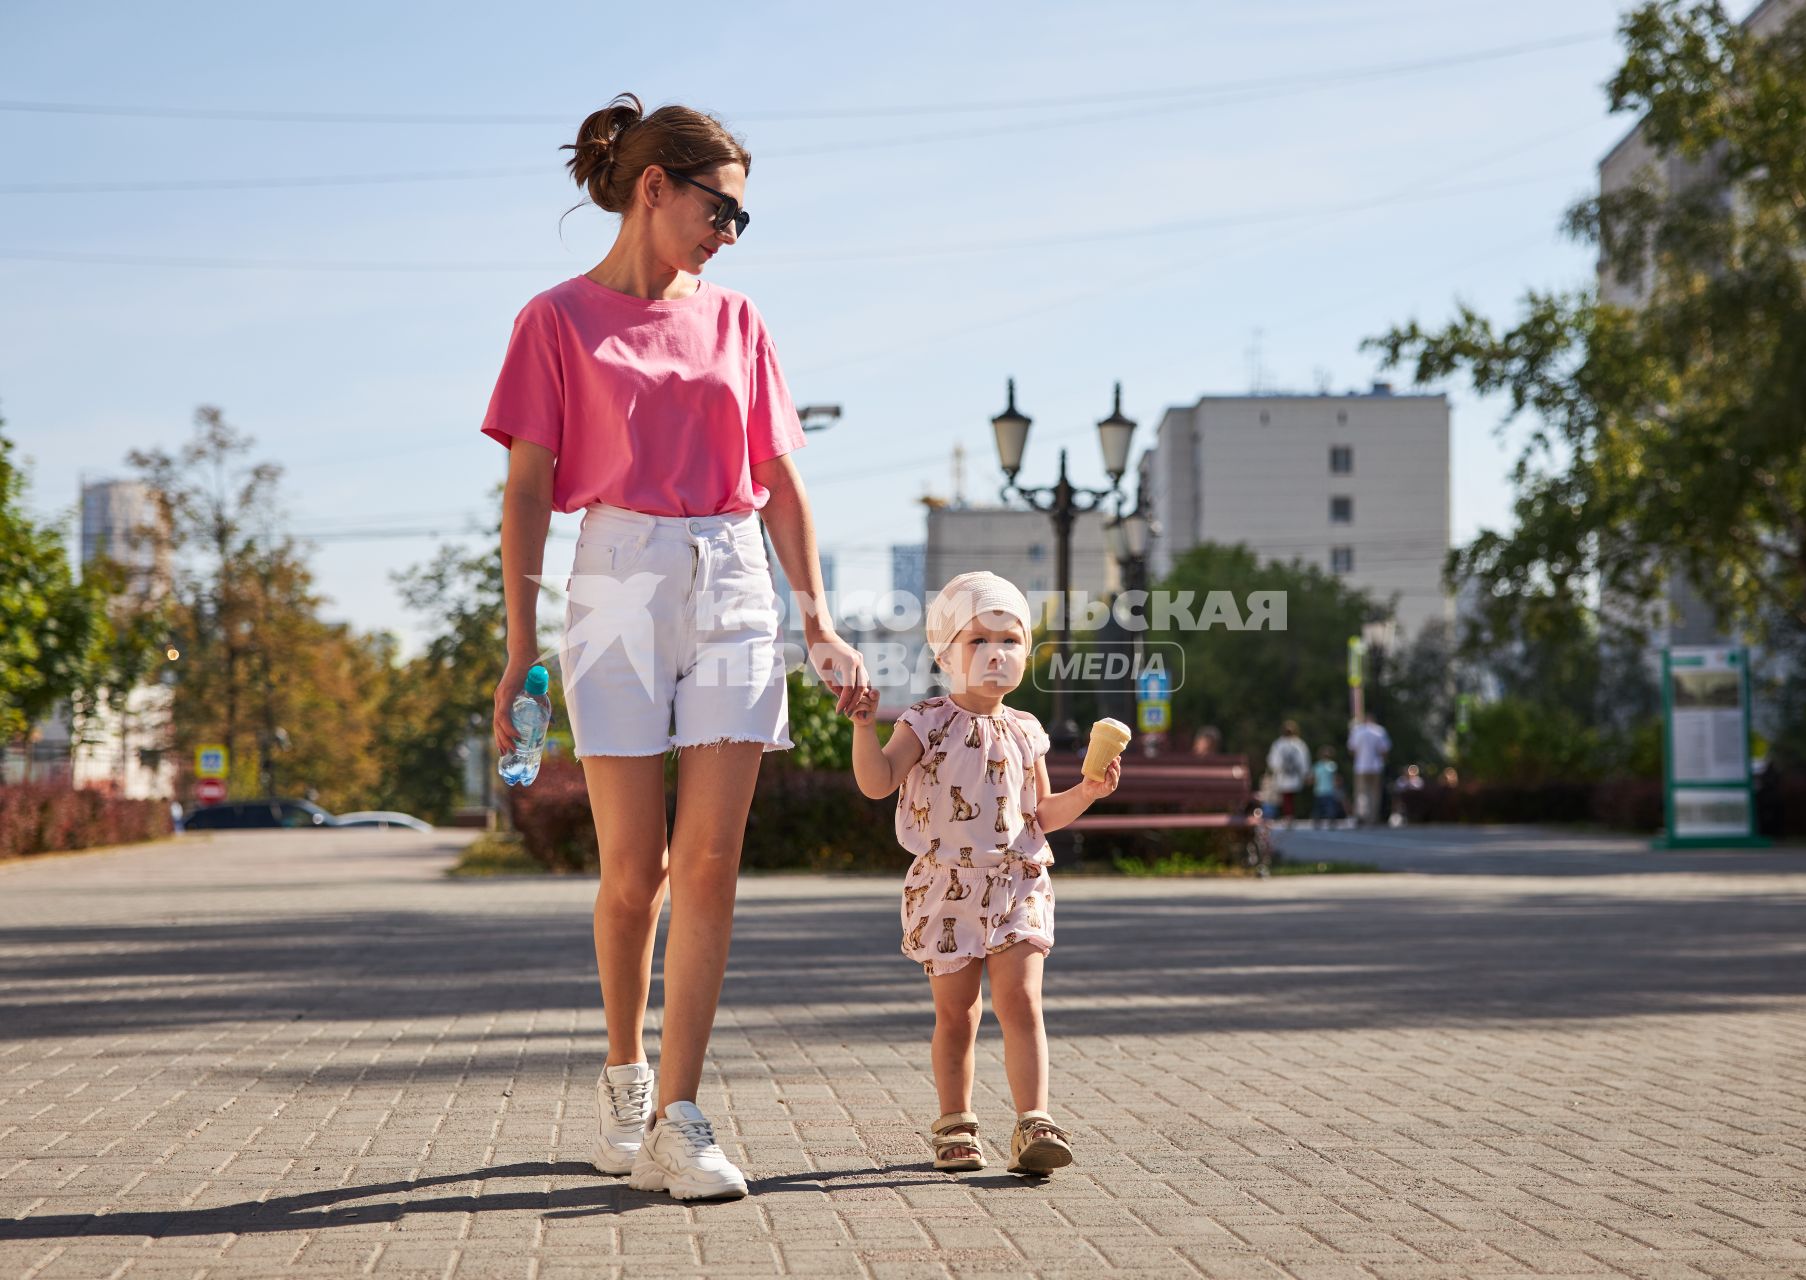 Пермь. Девушка с ребенком гуляют по улице.